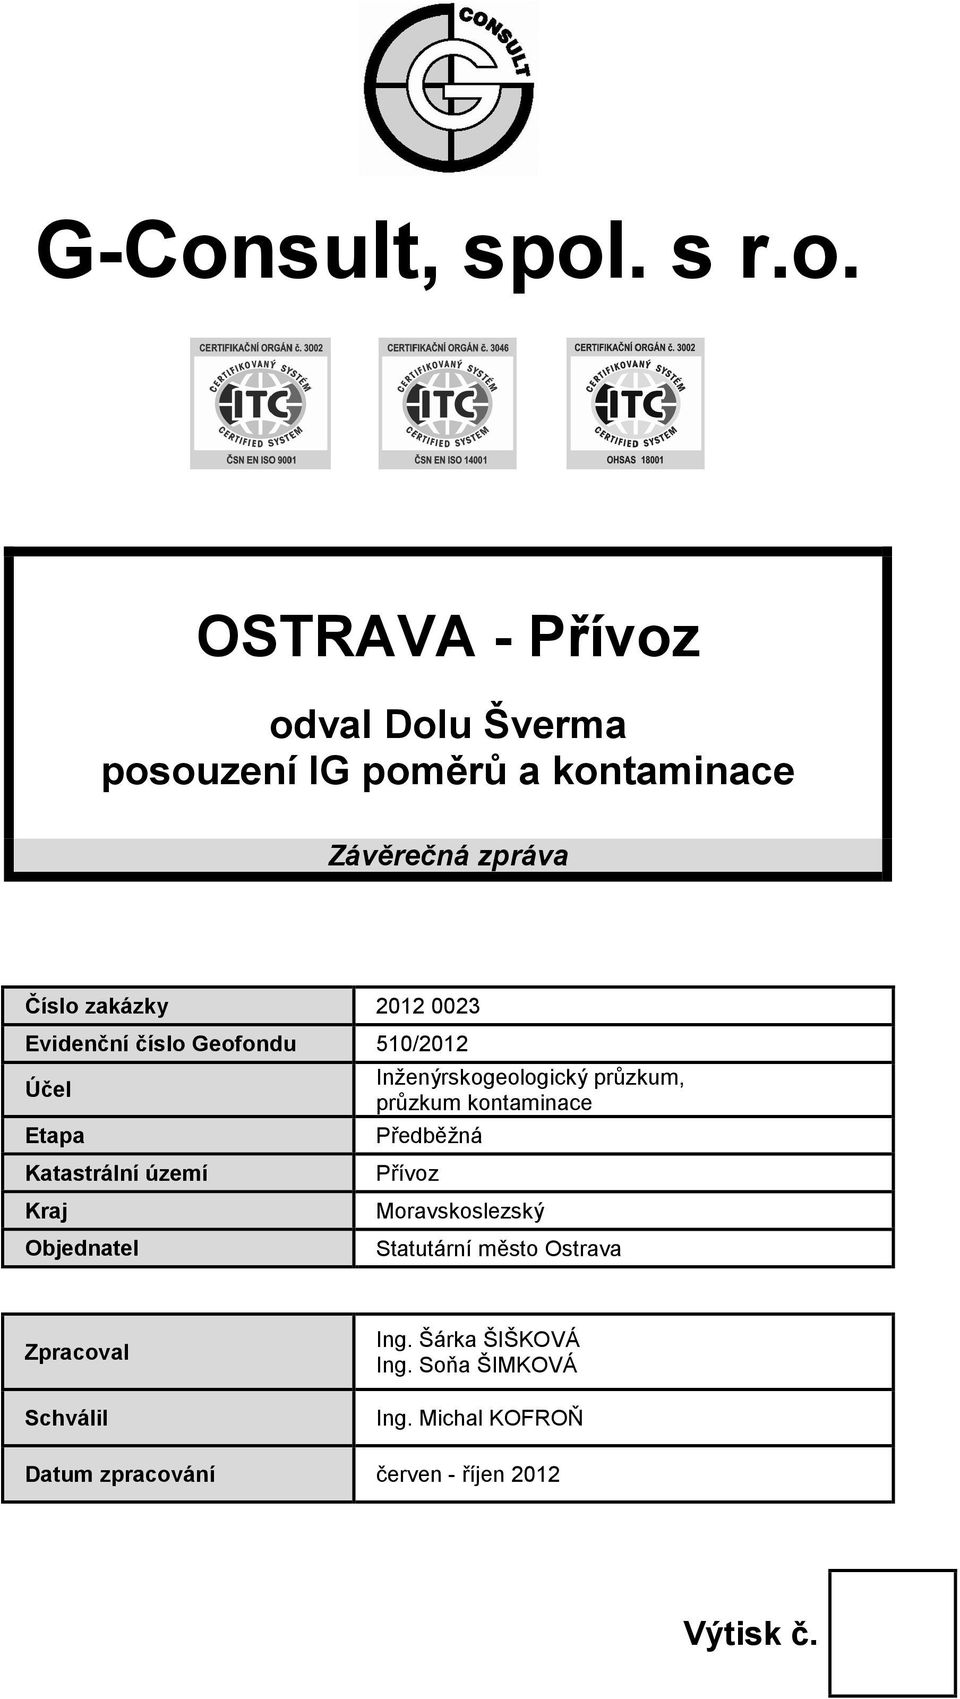 Inženýrskogeologický průzkum, průzkum kontaminace Předběžná Přívoz Moravskoslezský Statutární město Ostrava